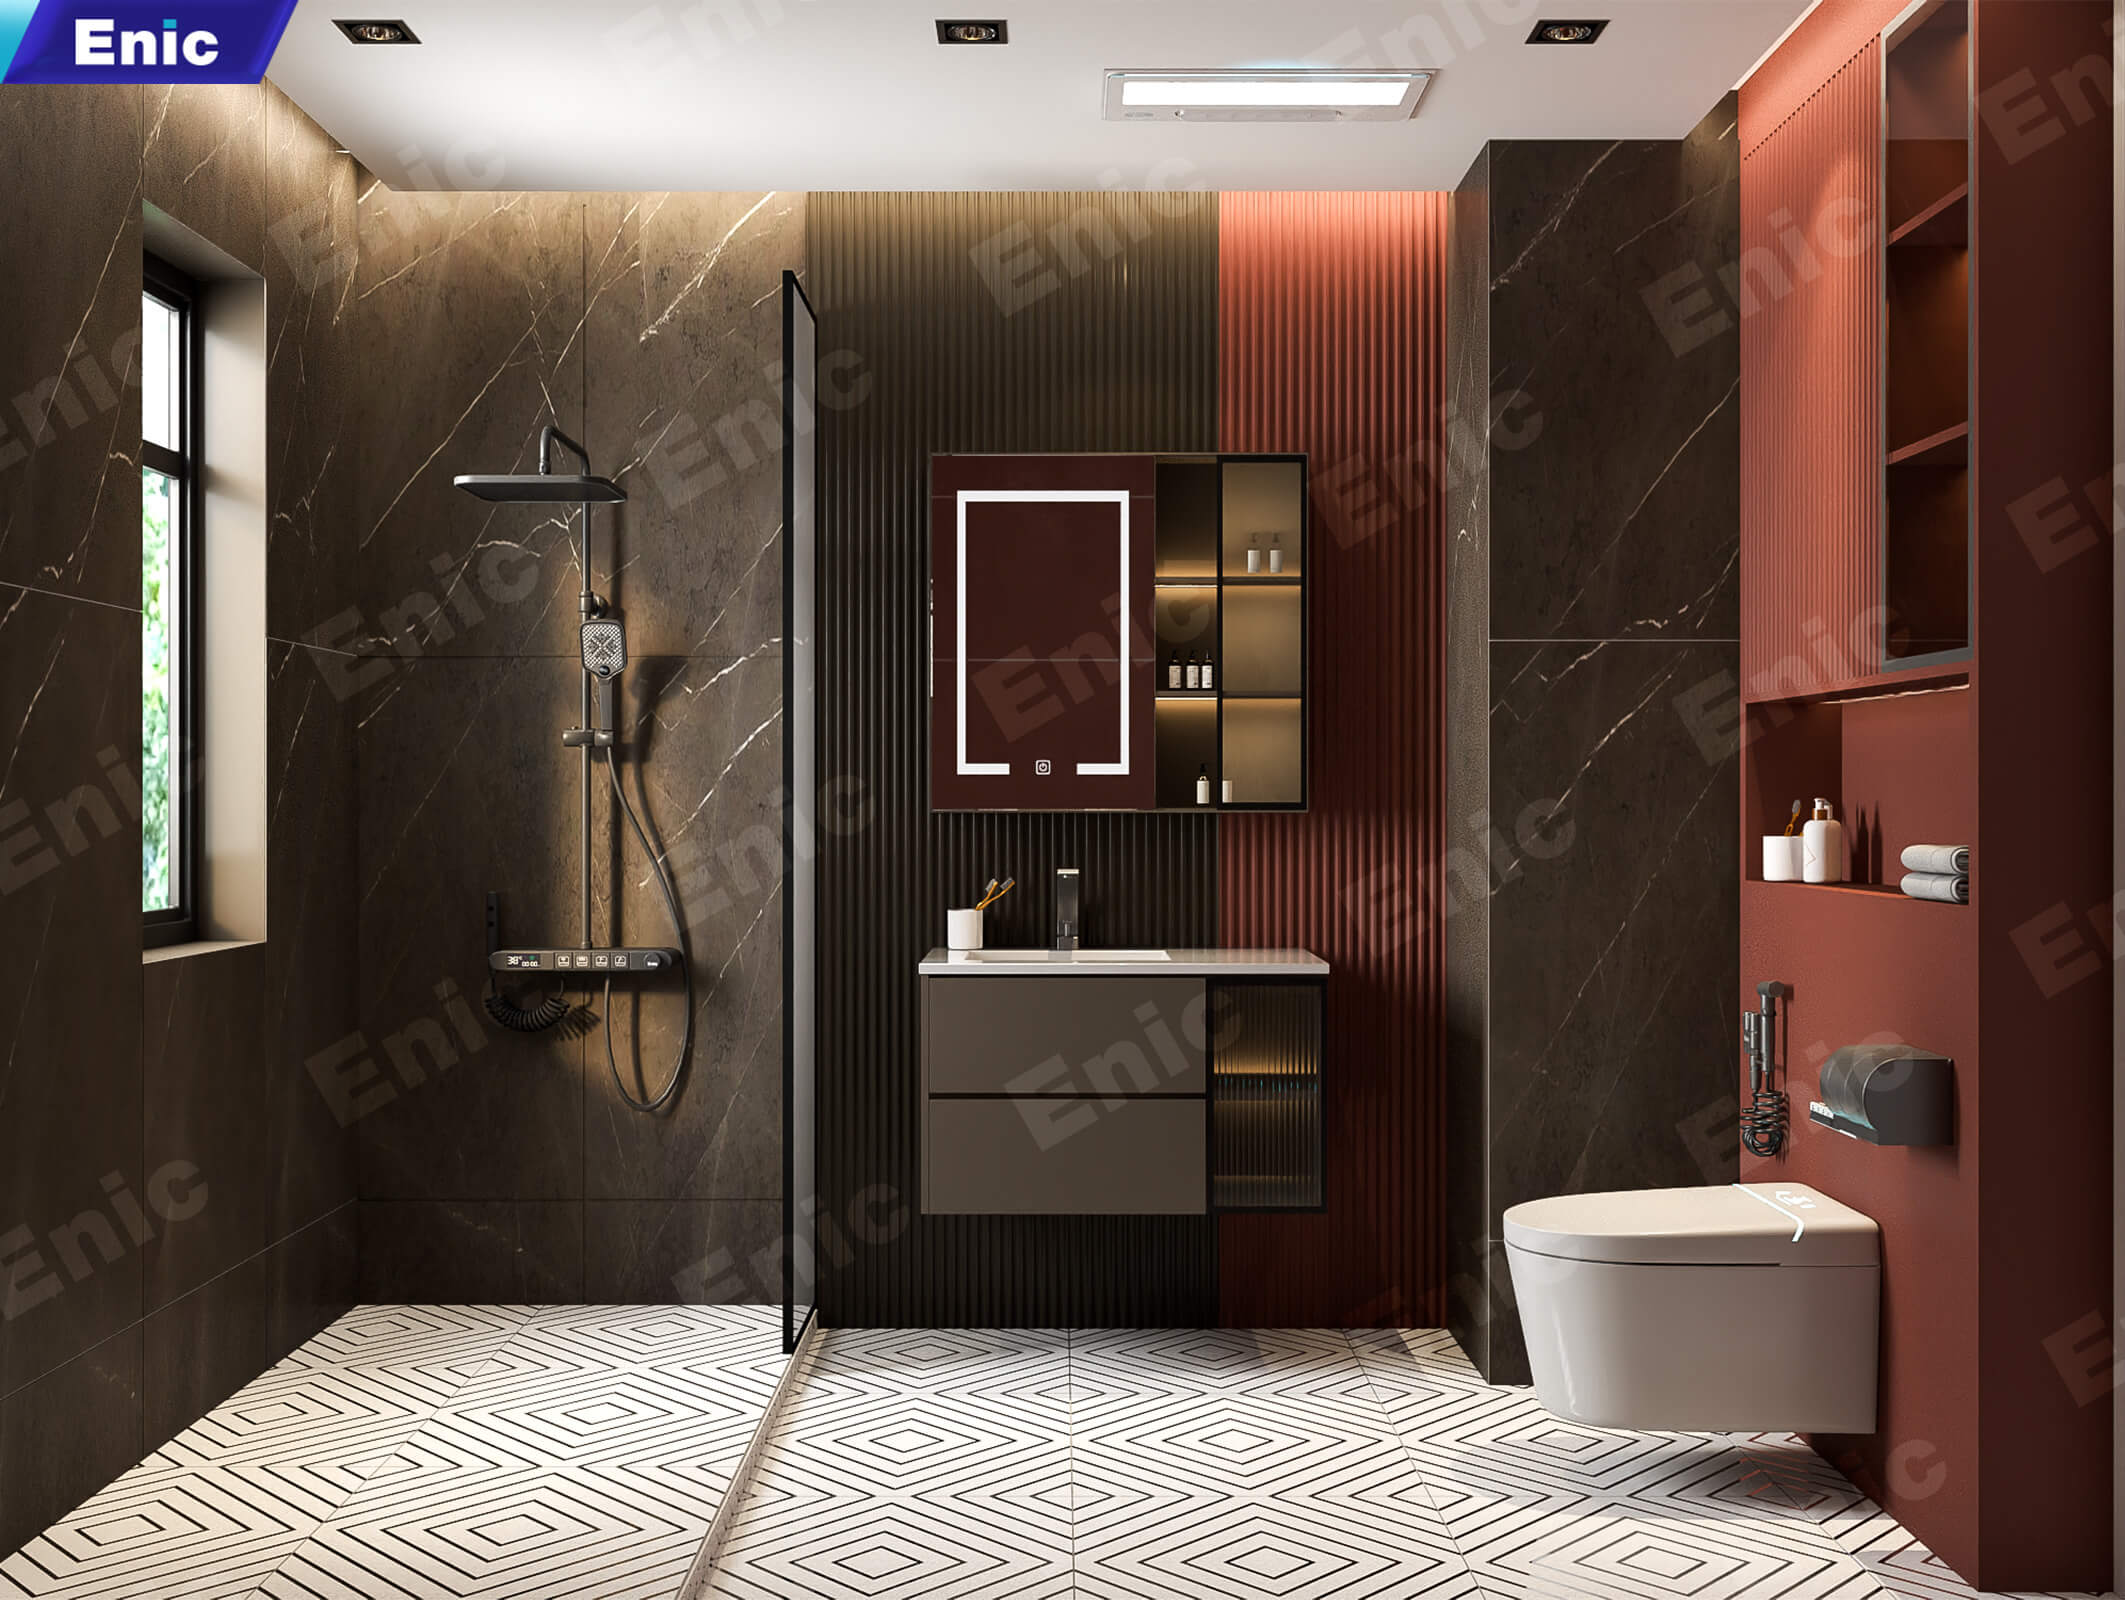 Phòng tắm lát gạch hoa văn kết hợp thiết bị cao cấp, mang màu cổ điển hóa hiện đại